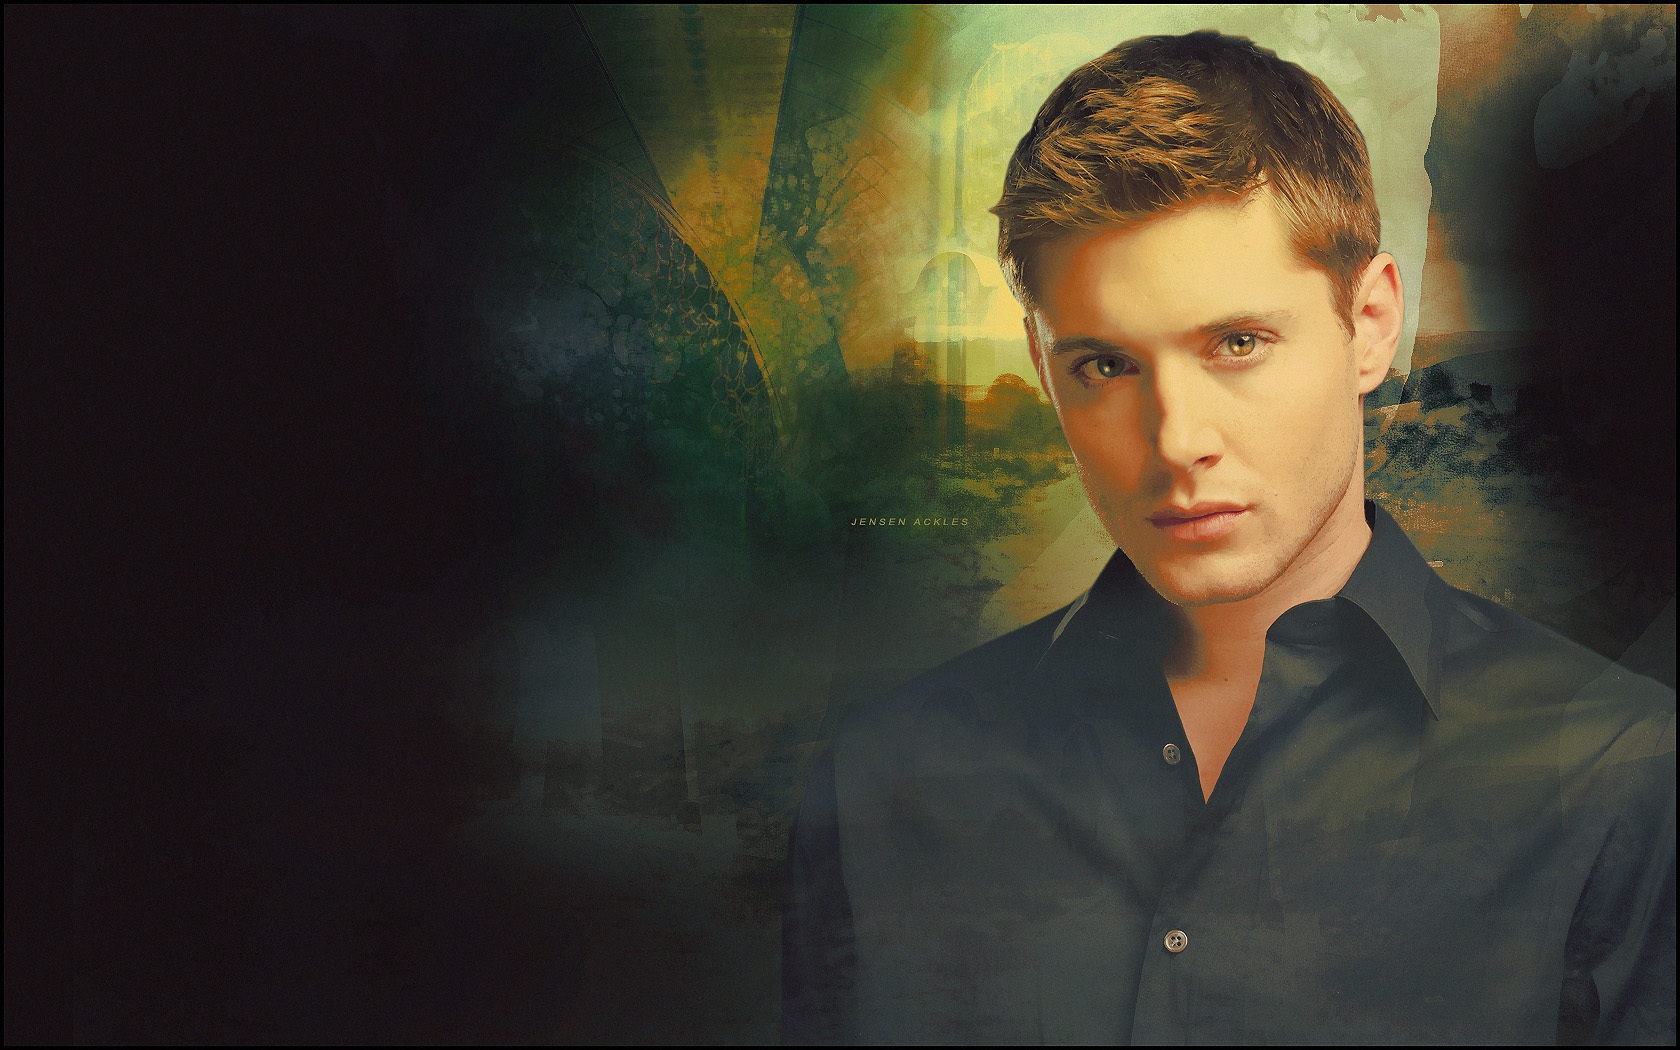 Jensen Ackles Wallpaper Actor